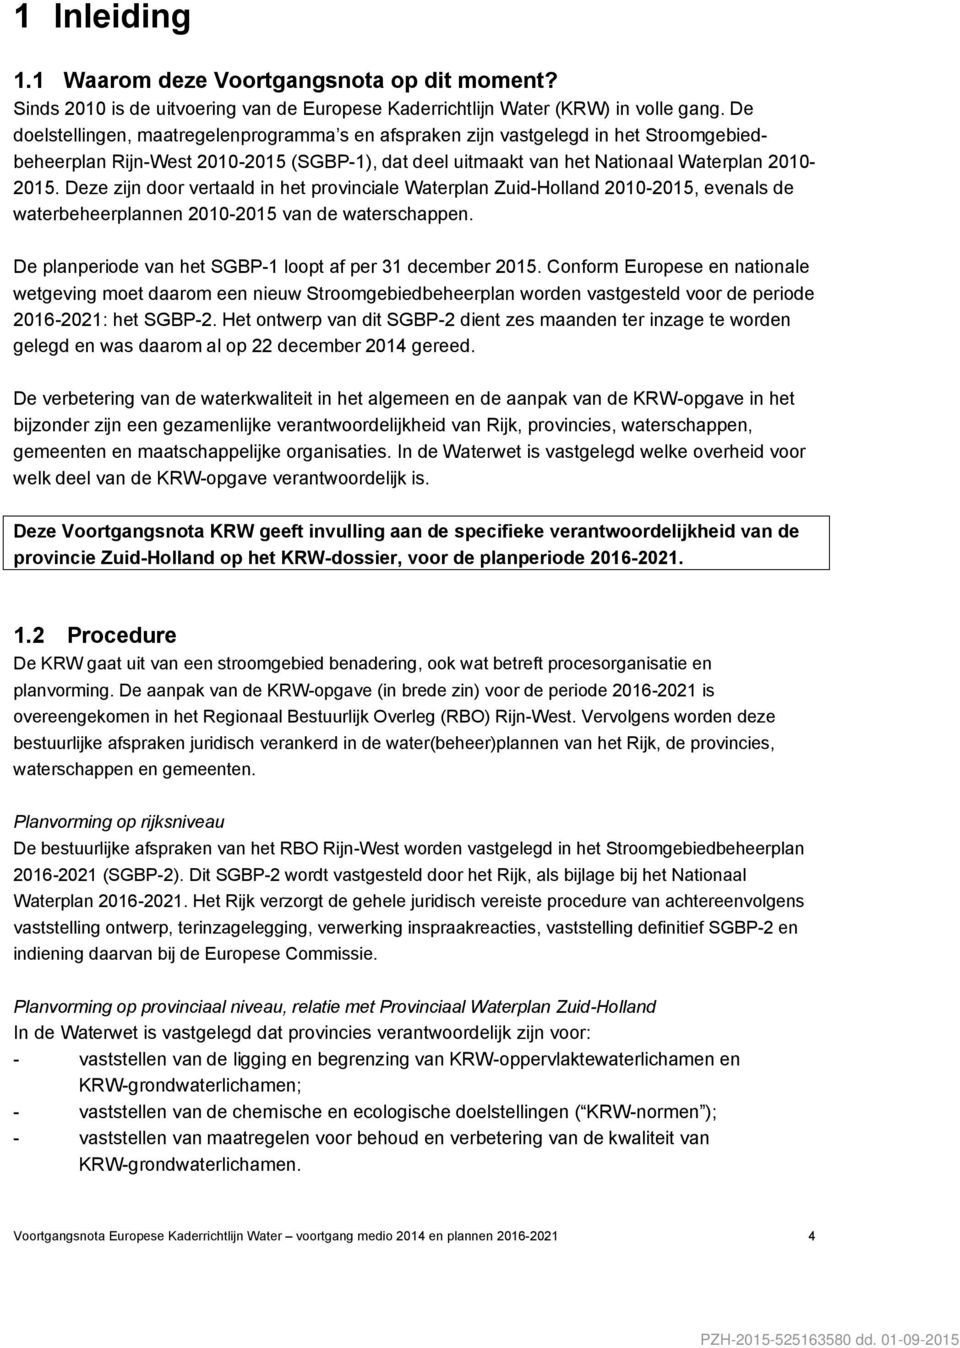 Deze zijn door vertaald in het provinciale Waterplan Zuid-Holland 2010-2015, evenals de waterbeheerplannen 2010-2015 van de waterschappen. De planperiode van het SGBP-1 loopt af per 31 december 2015.